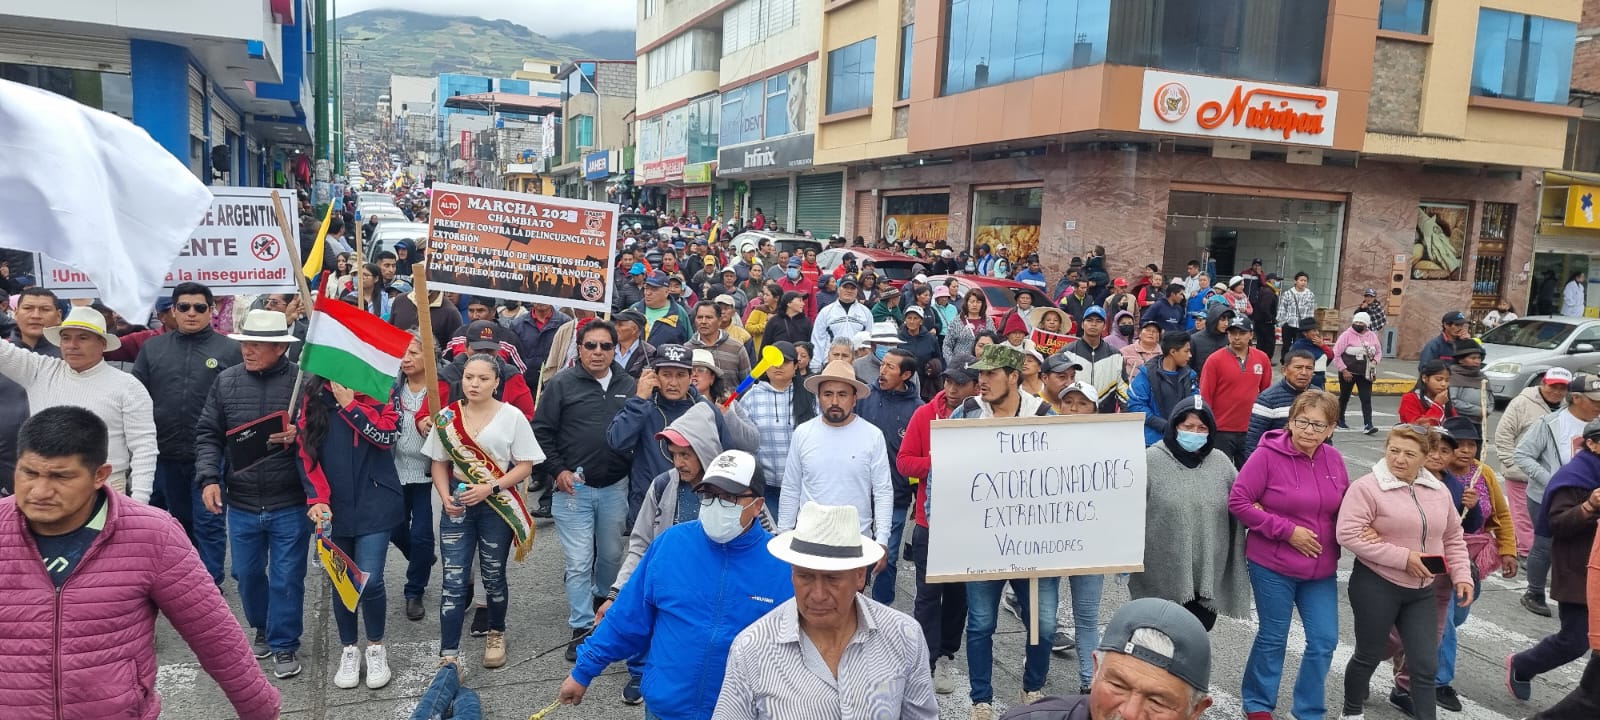 Una marcha masiva movilizó a miles de ciudadanos que exigían la salida de los venezolanos del territorio.